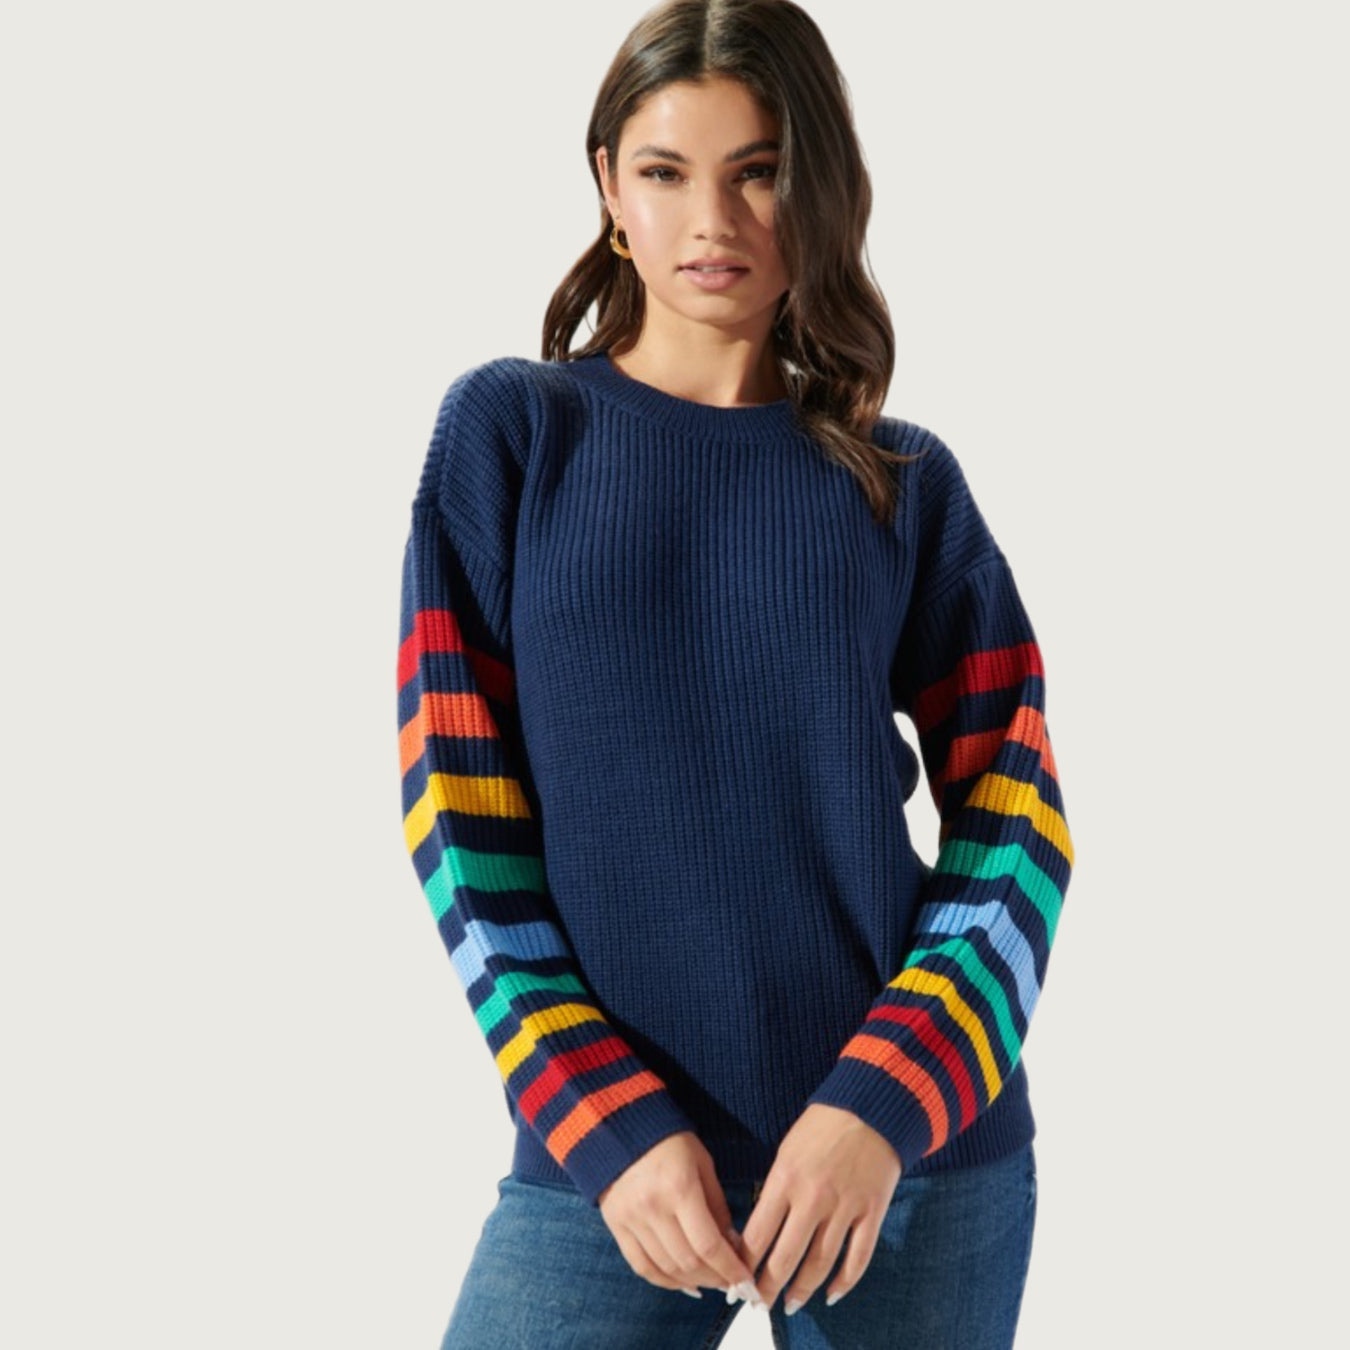 Brenda Retro Sweater